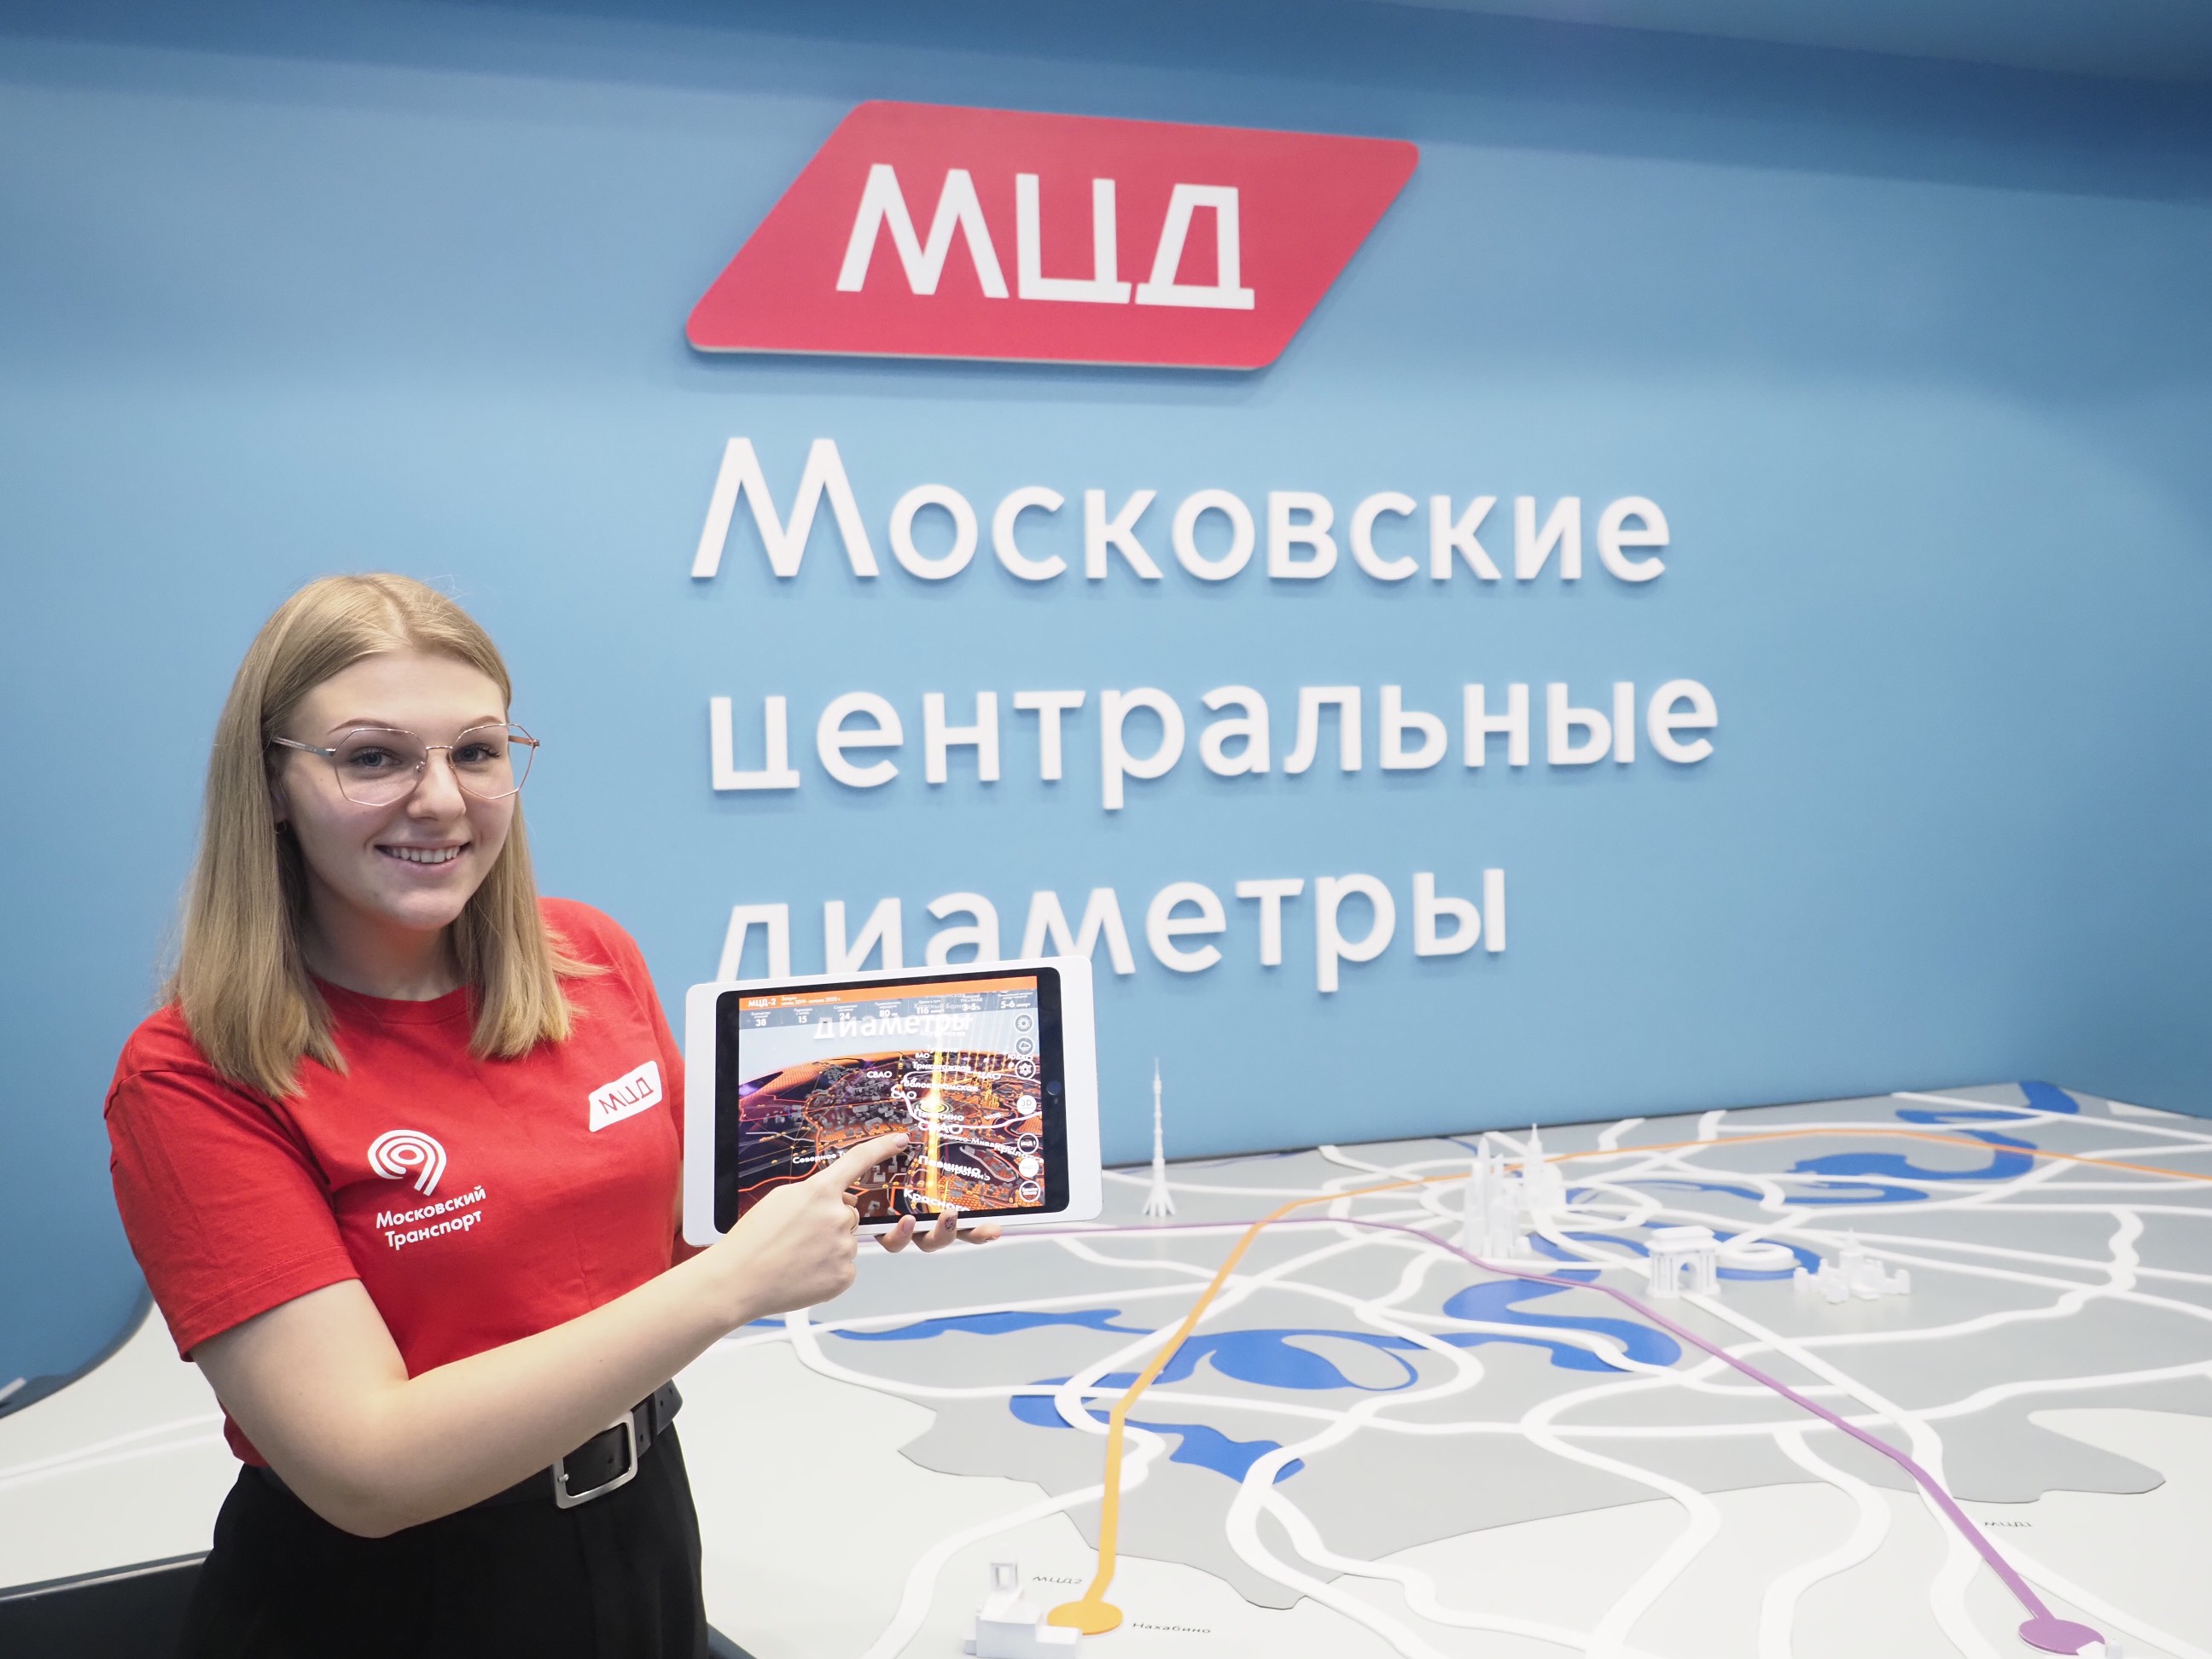 Онлайн-экскурсии и лекции о московском транспорте запустит павильон МЦД